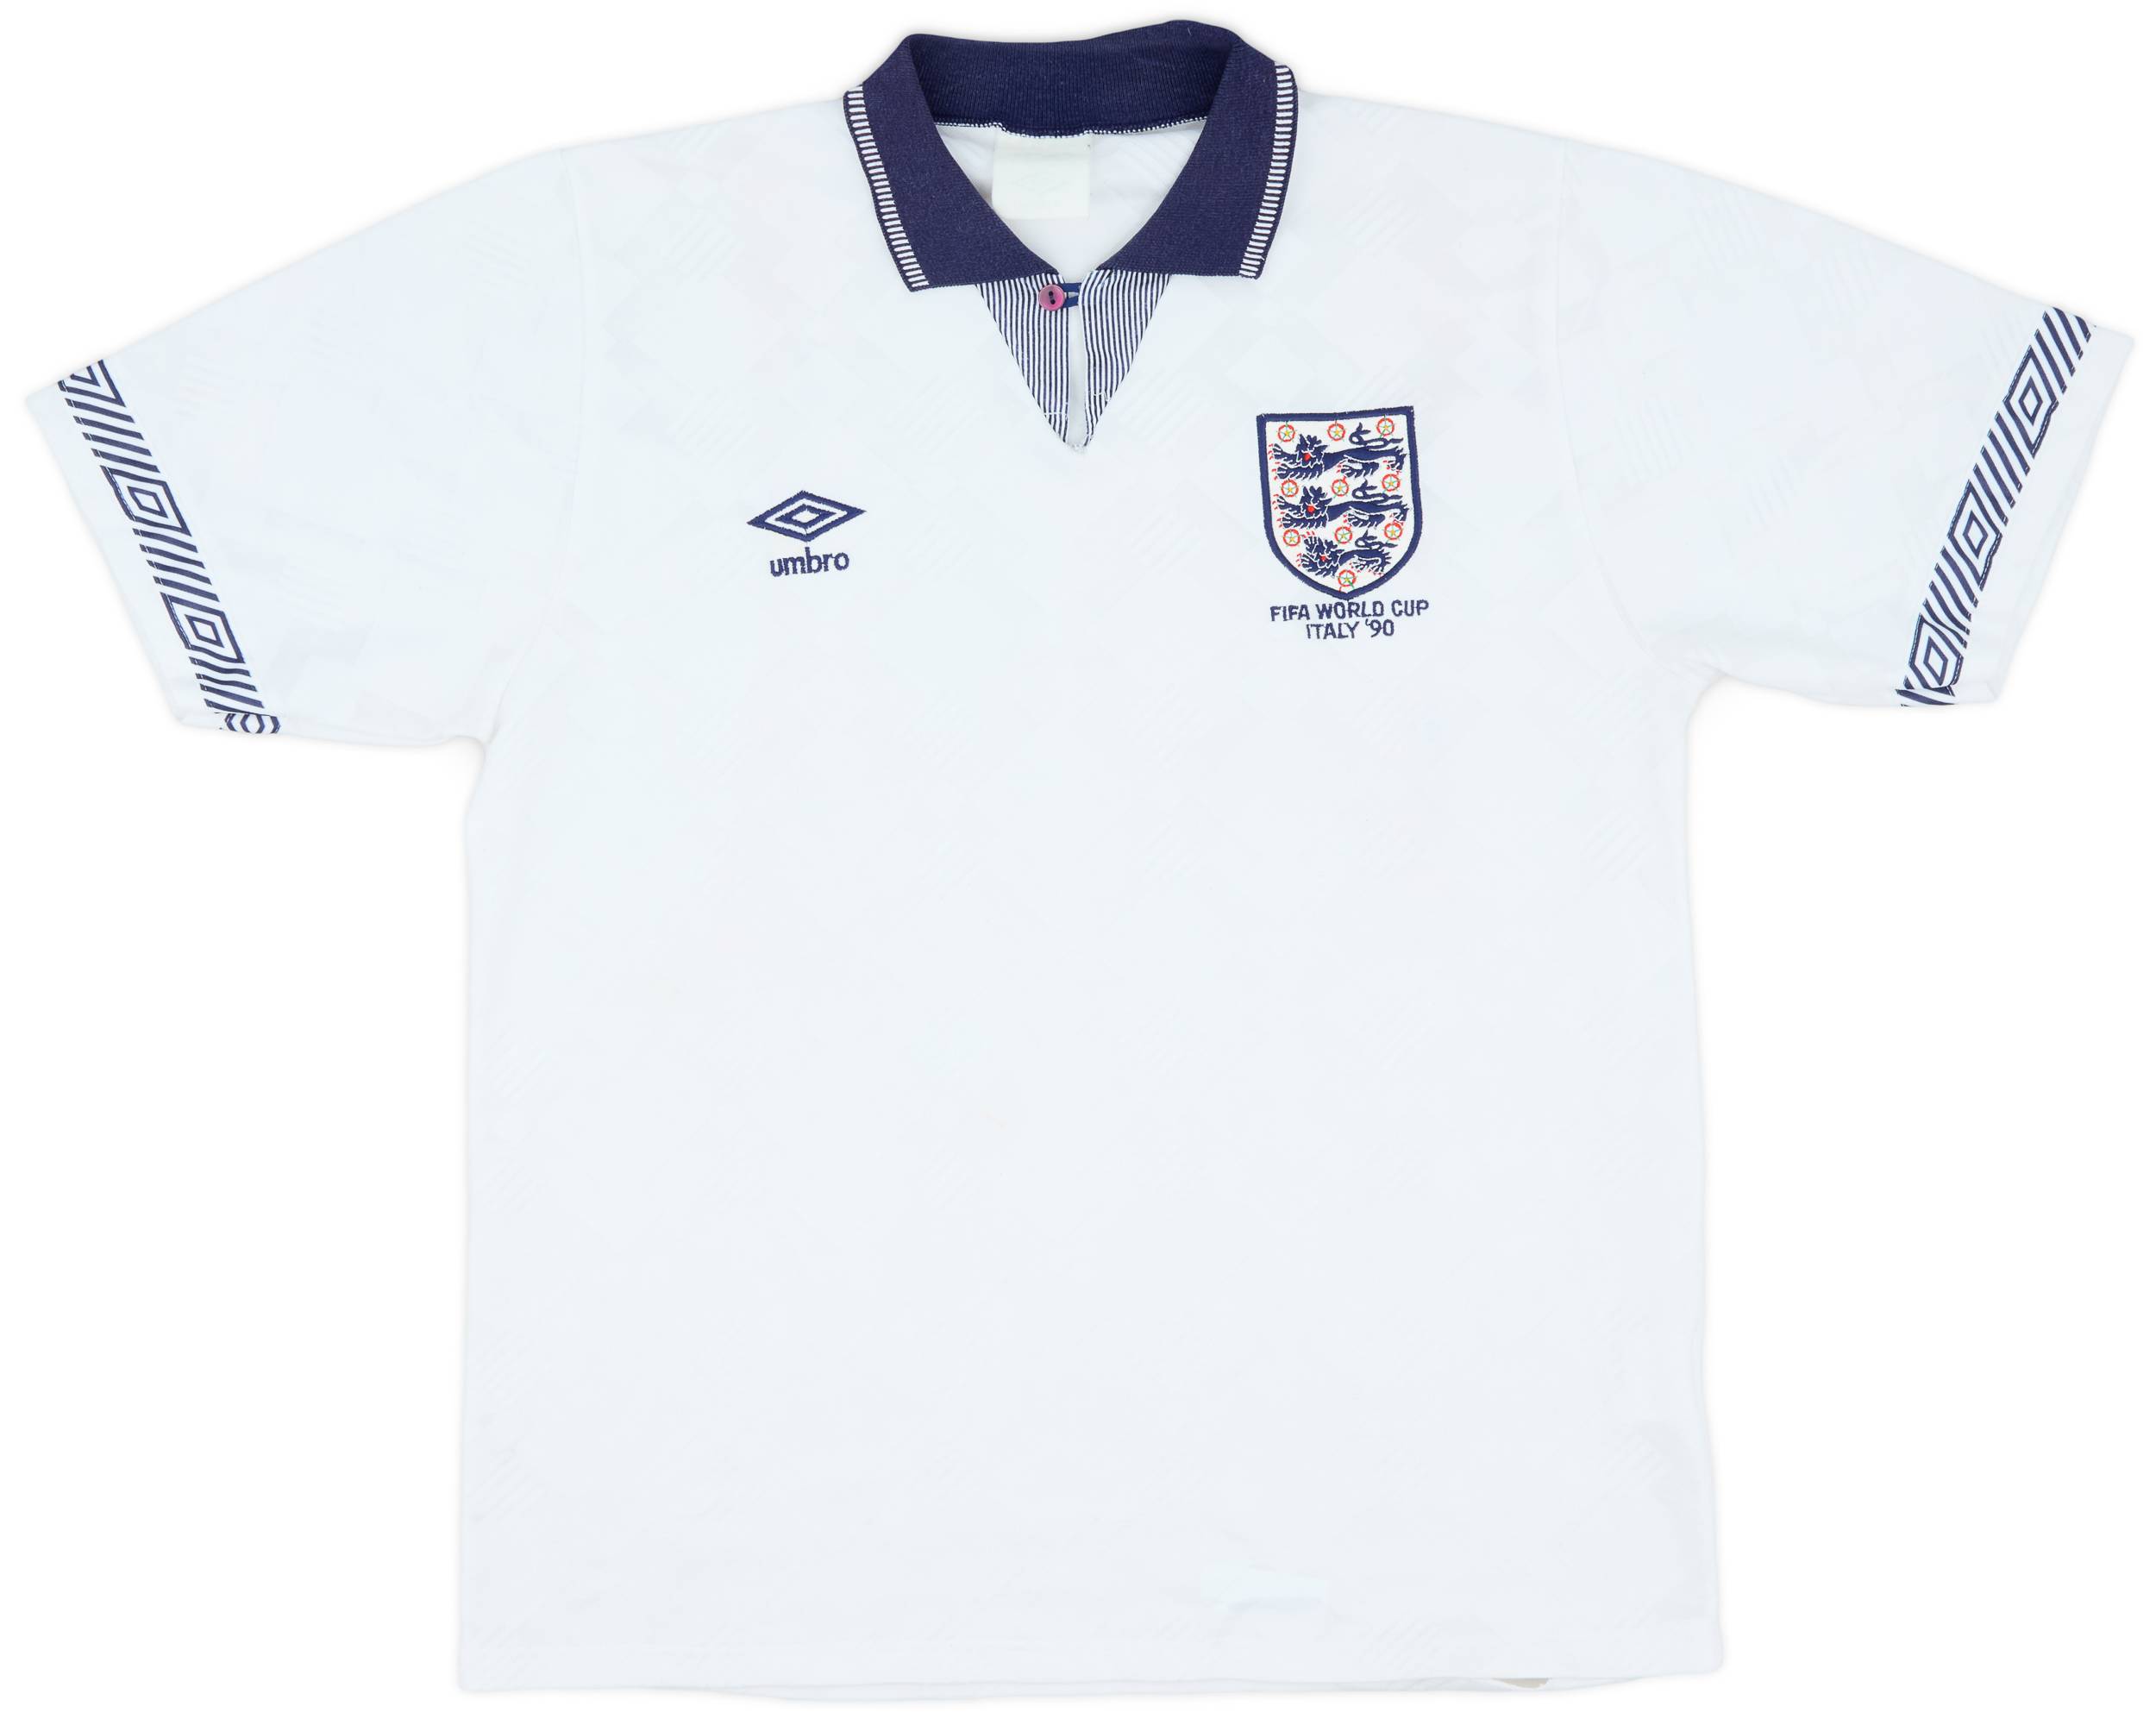 1990-92 England Home Shirt - 6/10 - (L)